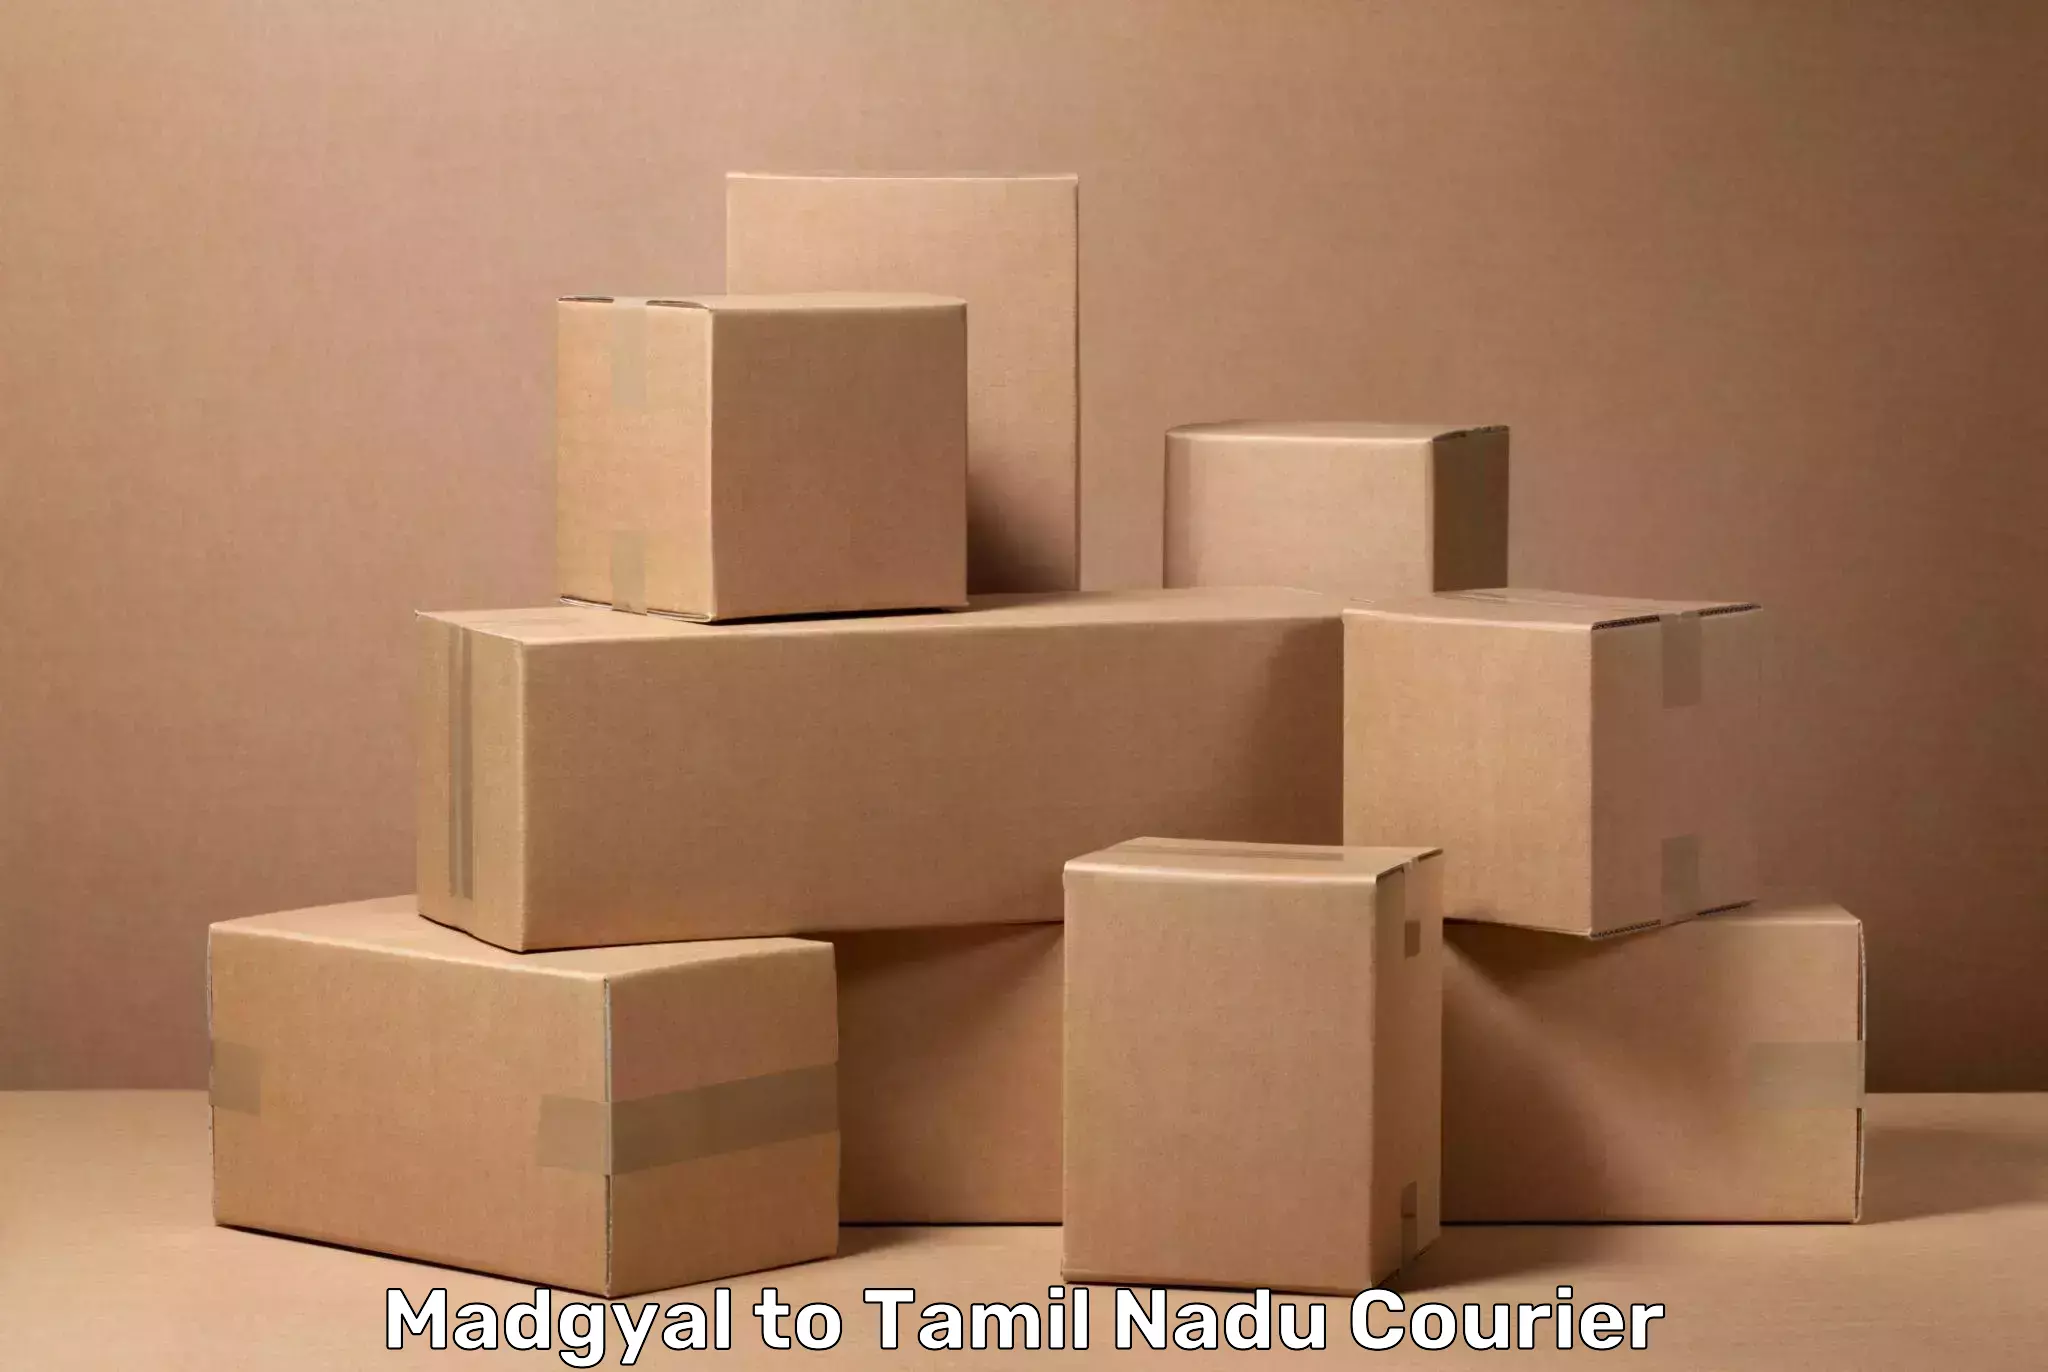 Baggage shipping experience Madgyal to Tamil Nadu